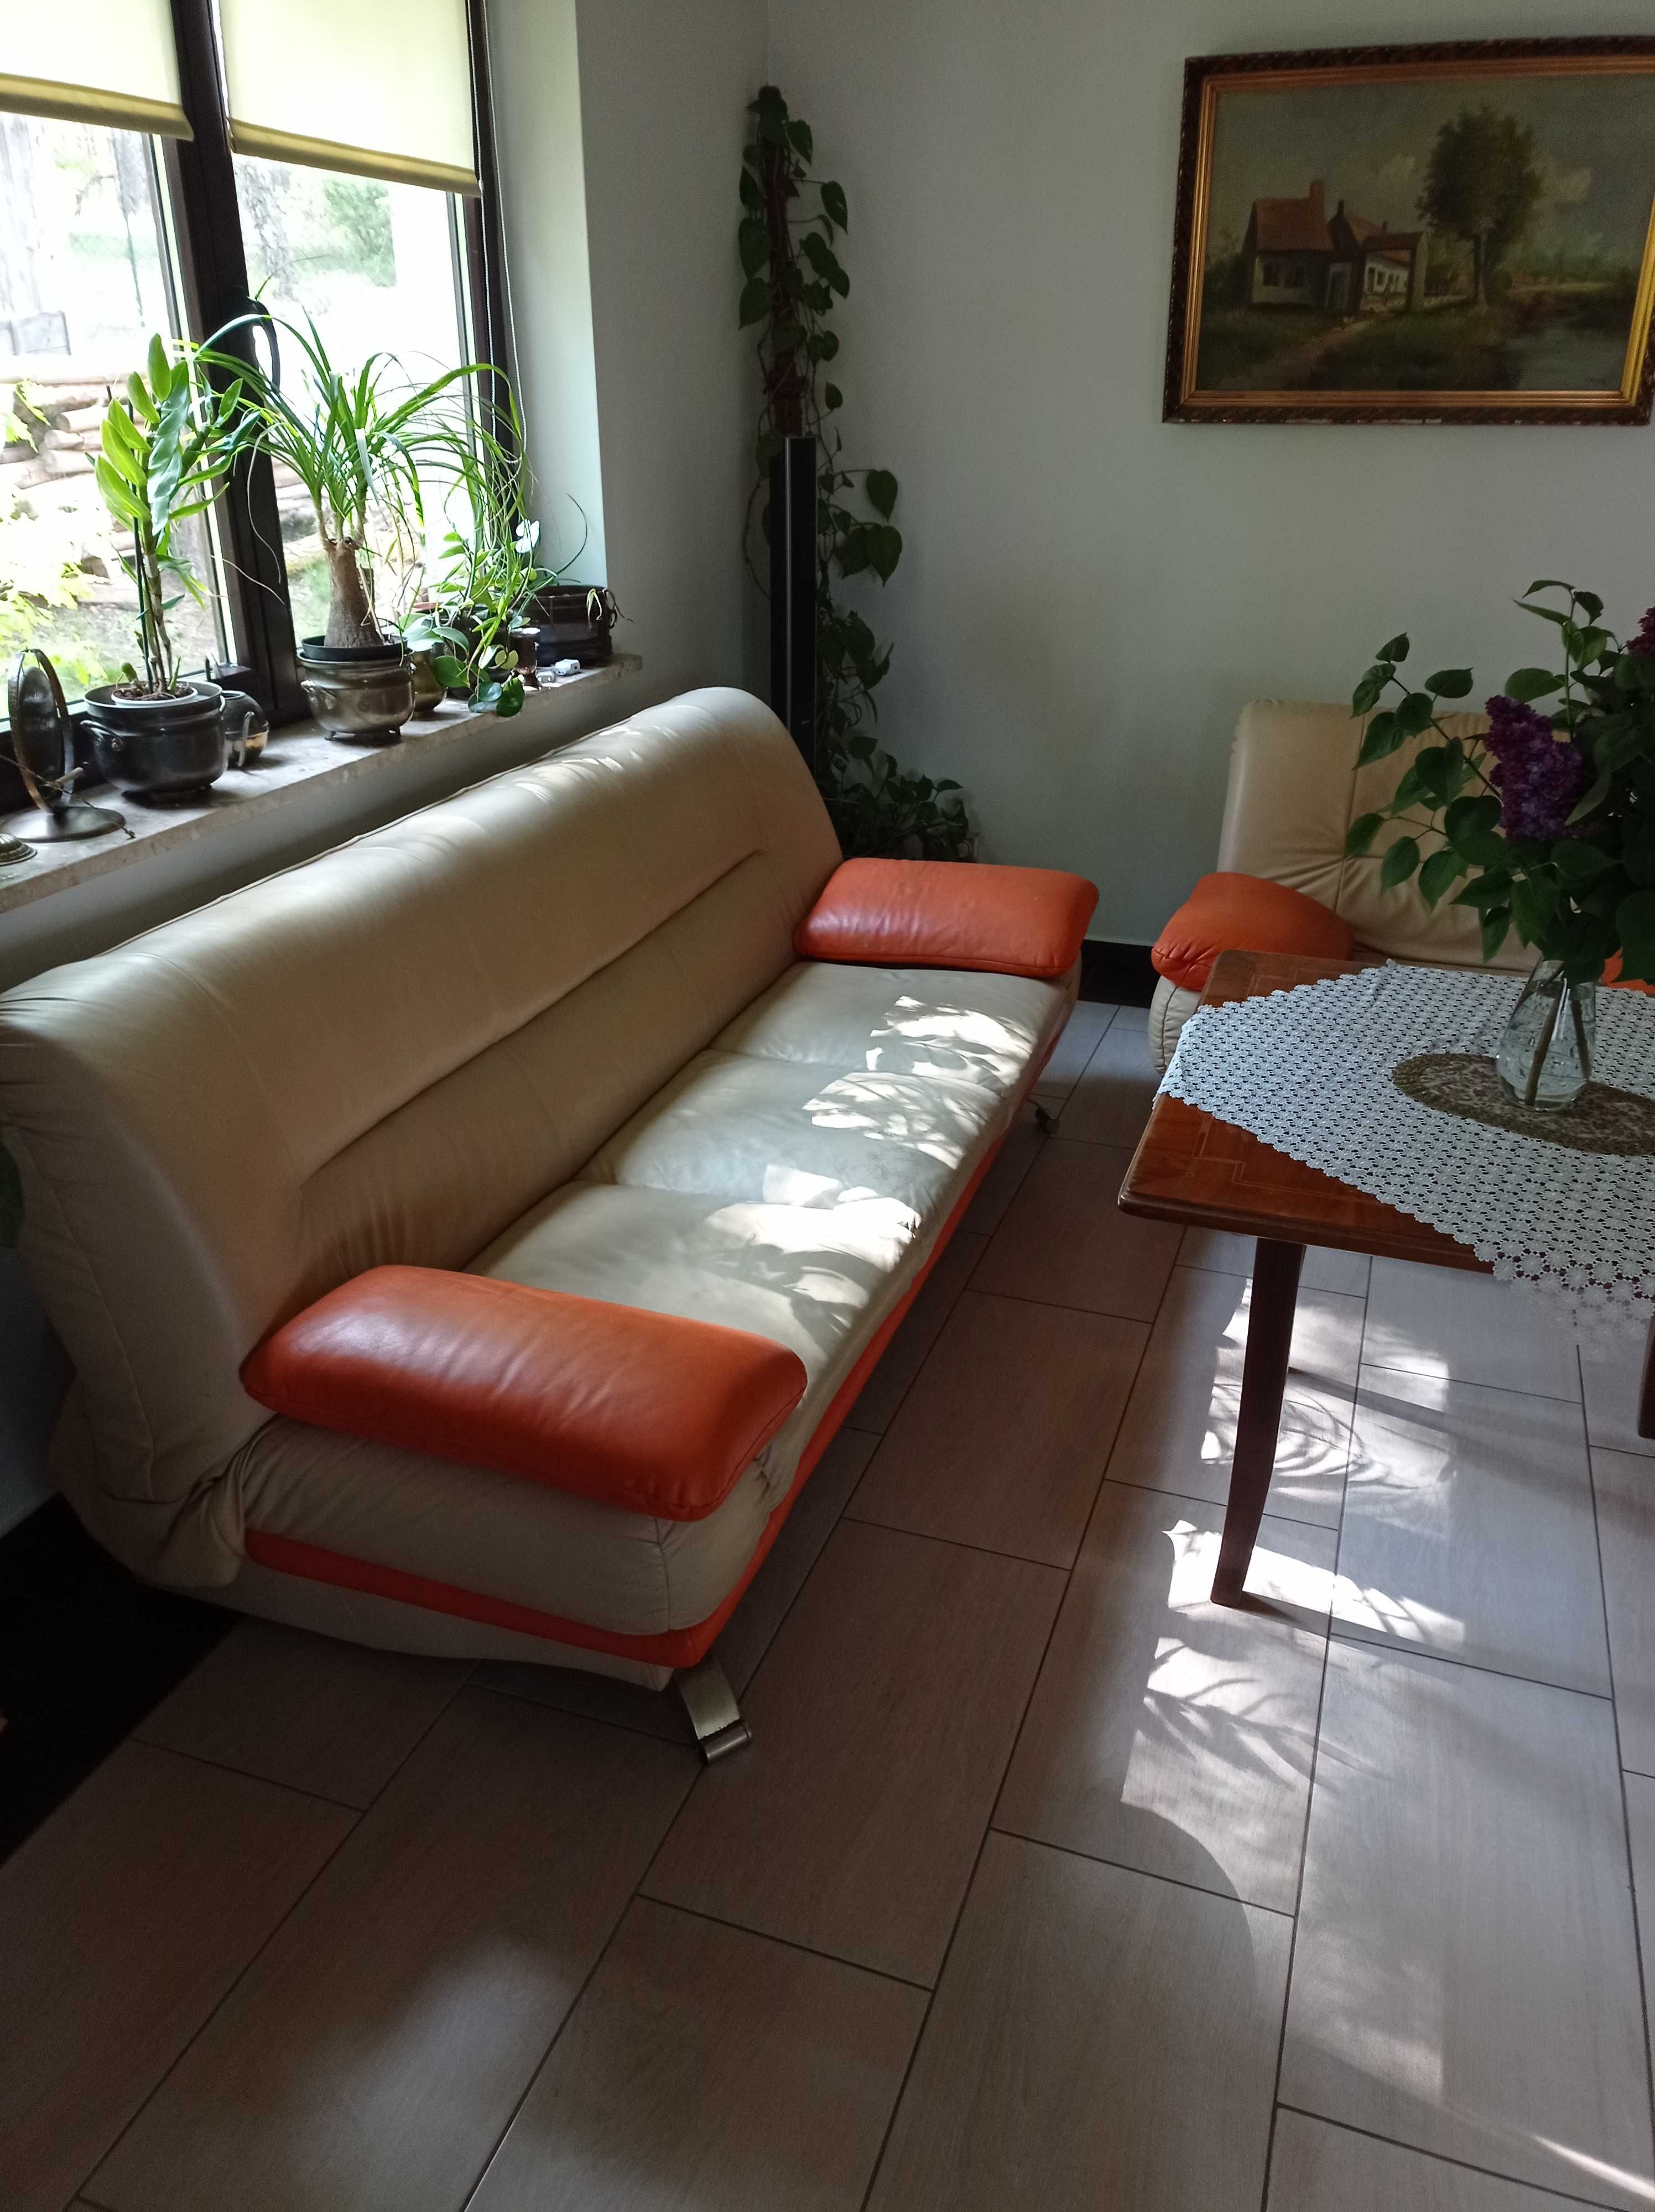 Kanapa skóra fotele wygodne kanapa rozkładana komplet wypoczynkowy